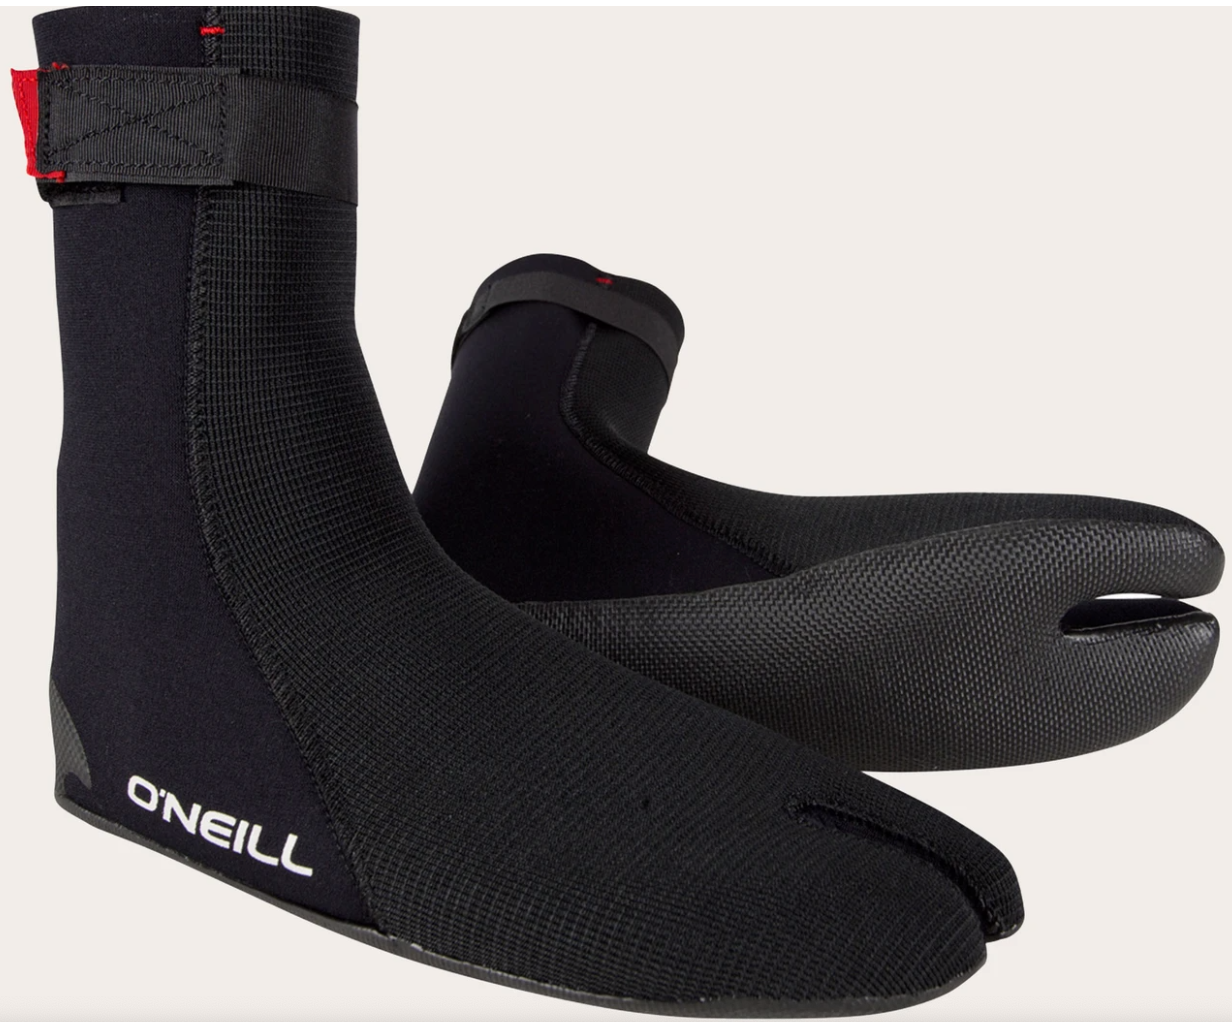 O'neill Ninja ST 3mm Boots | 2020